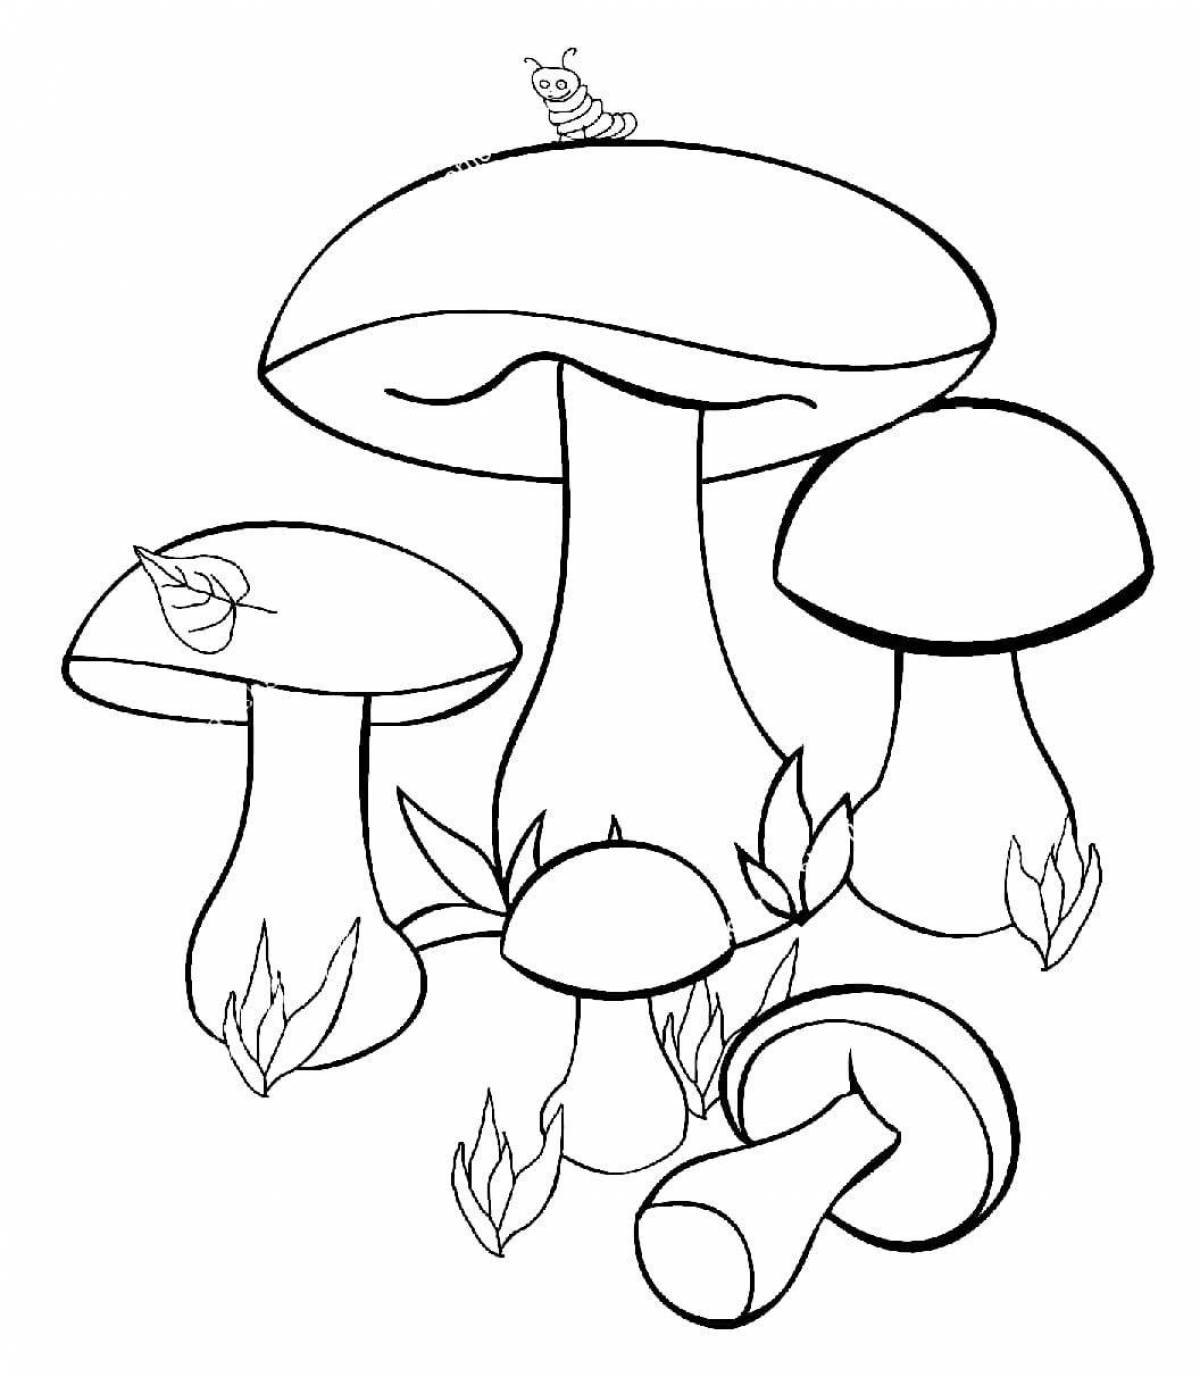 Милые грибы-раскраски для детей 3-4 лет